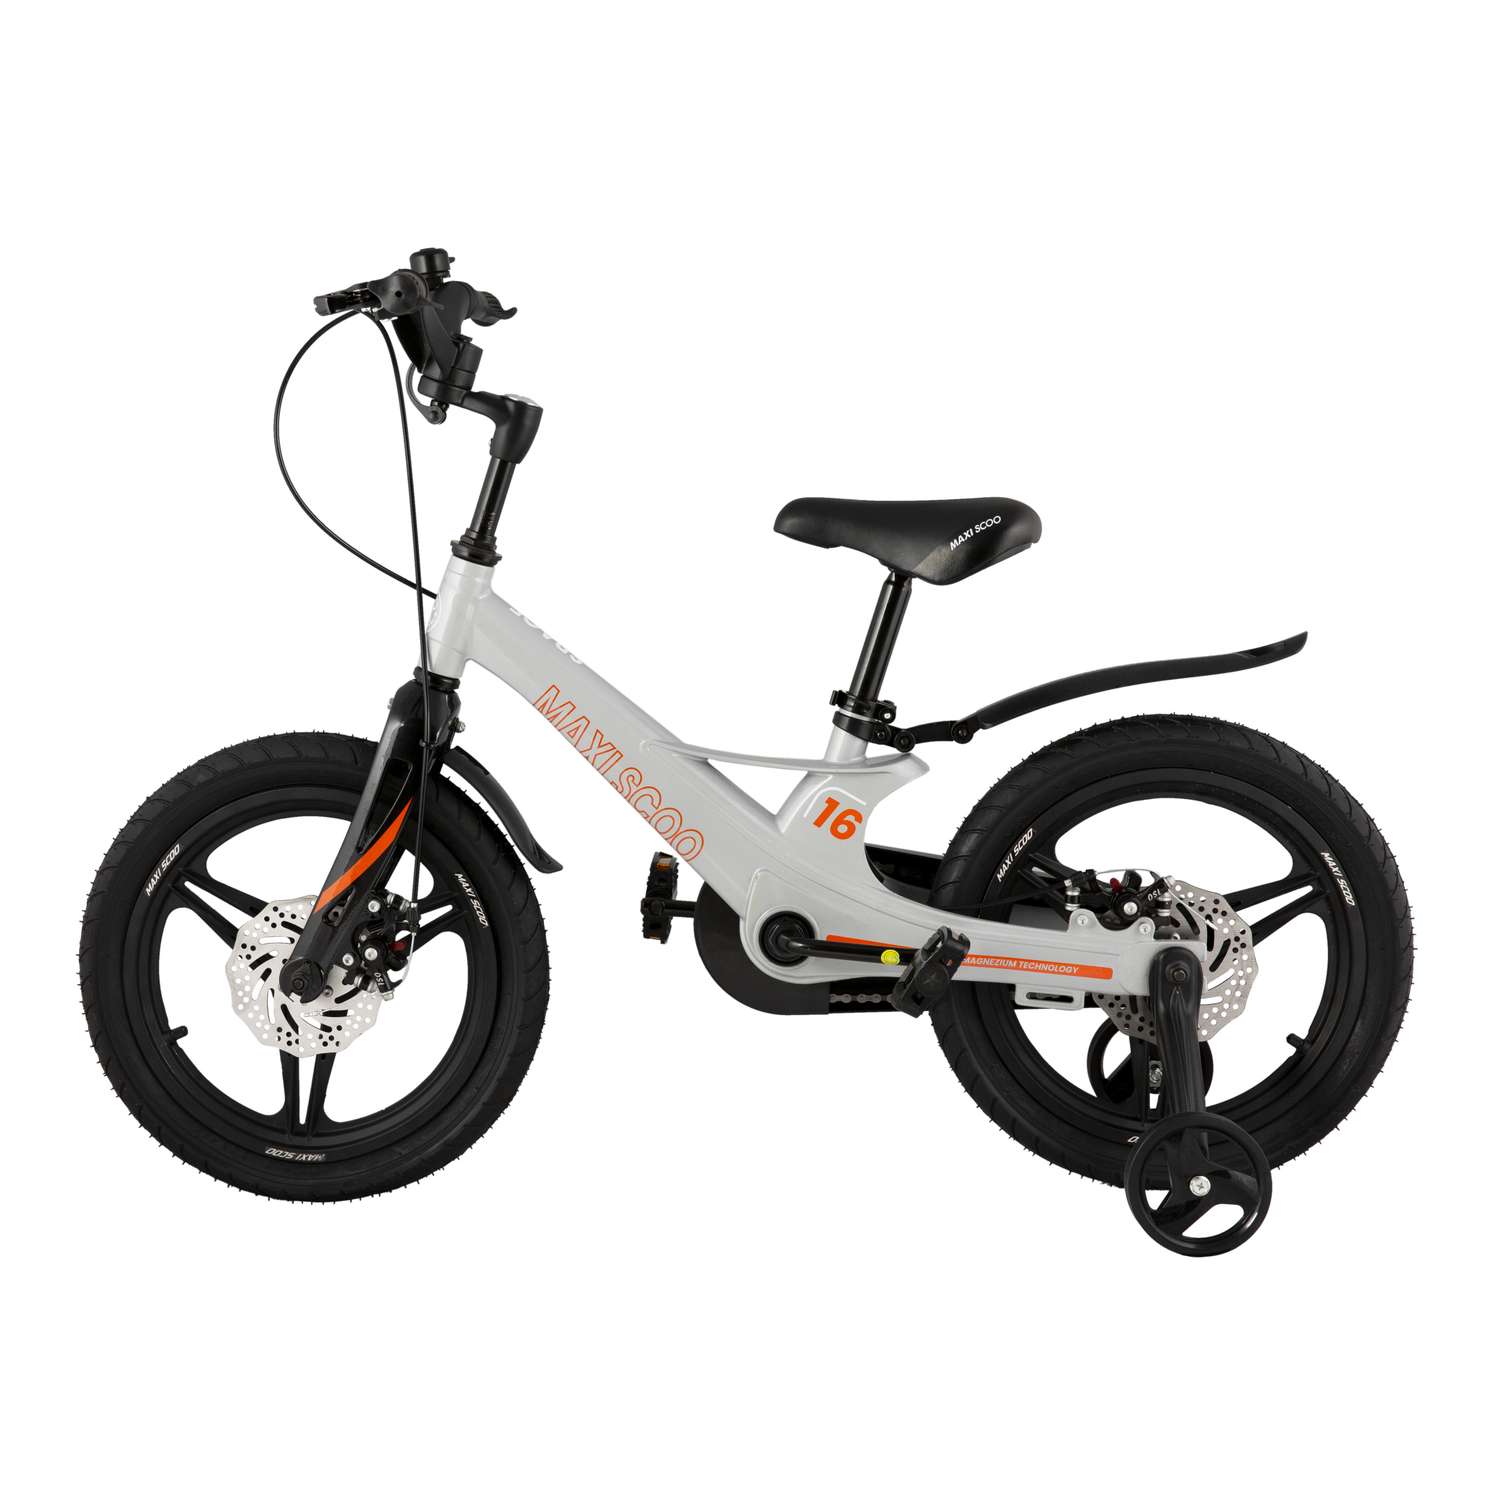 Детский двухколесный велосипед Maxiscoo Space делюкс 16 графит - фото 2